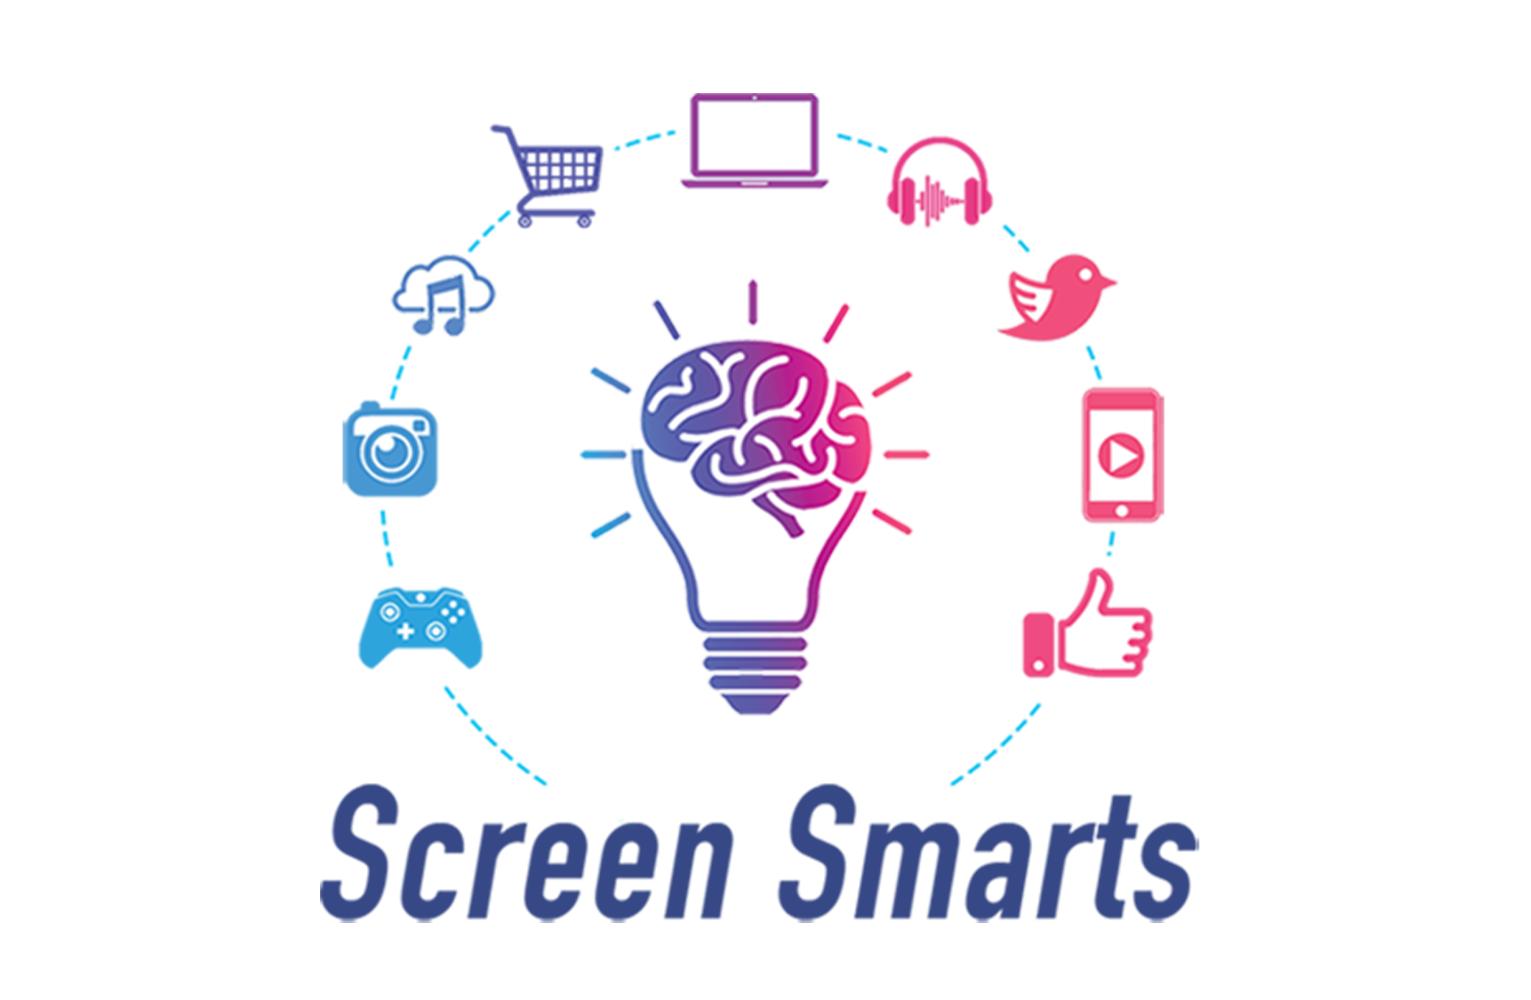 Screen Smarts